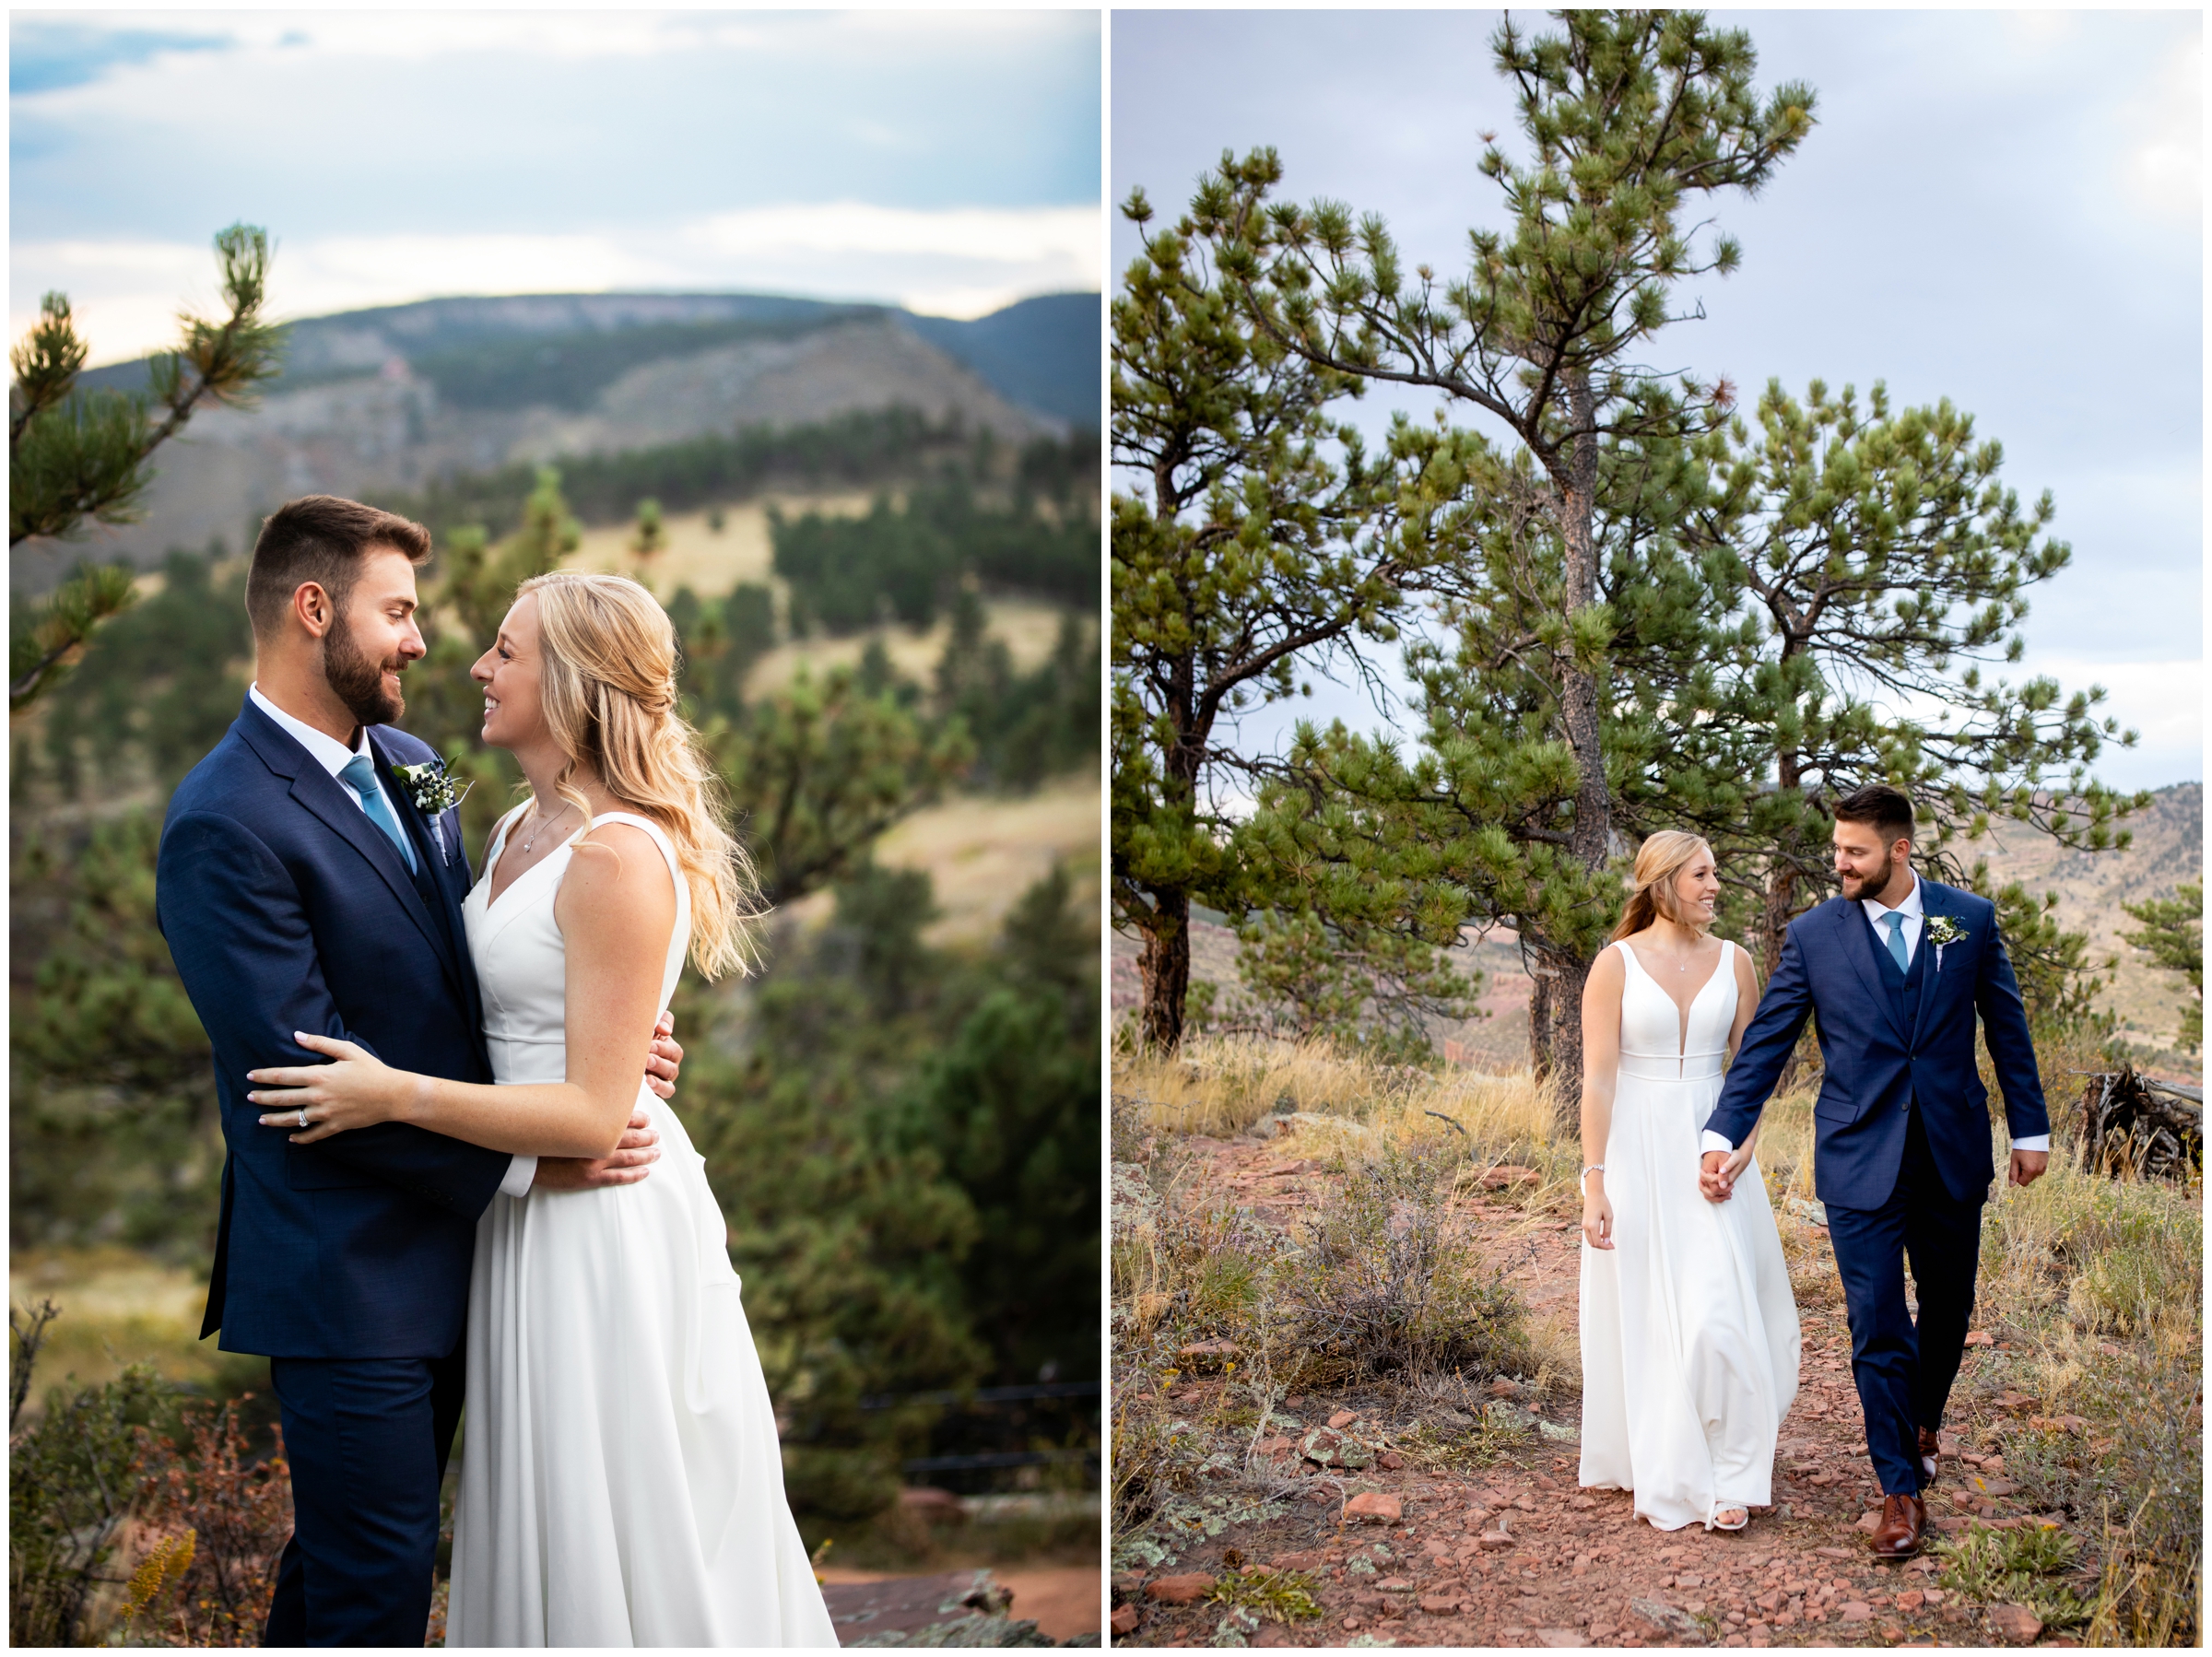 Colorado mountain wedding inspiration in Lyons, Colorado